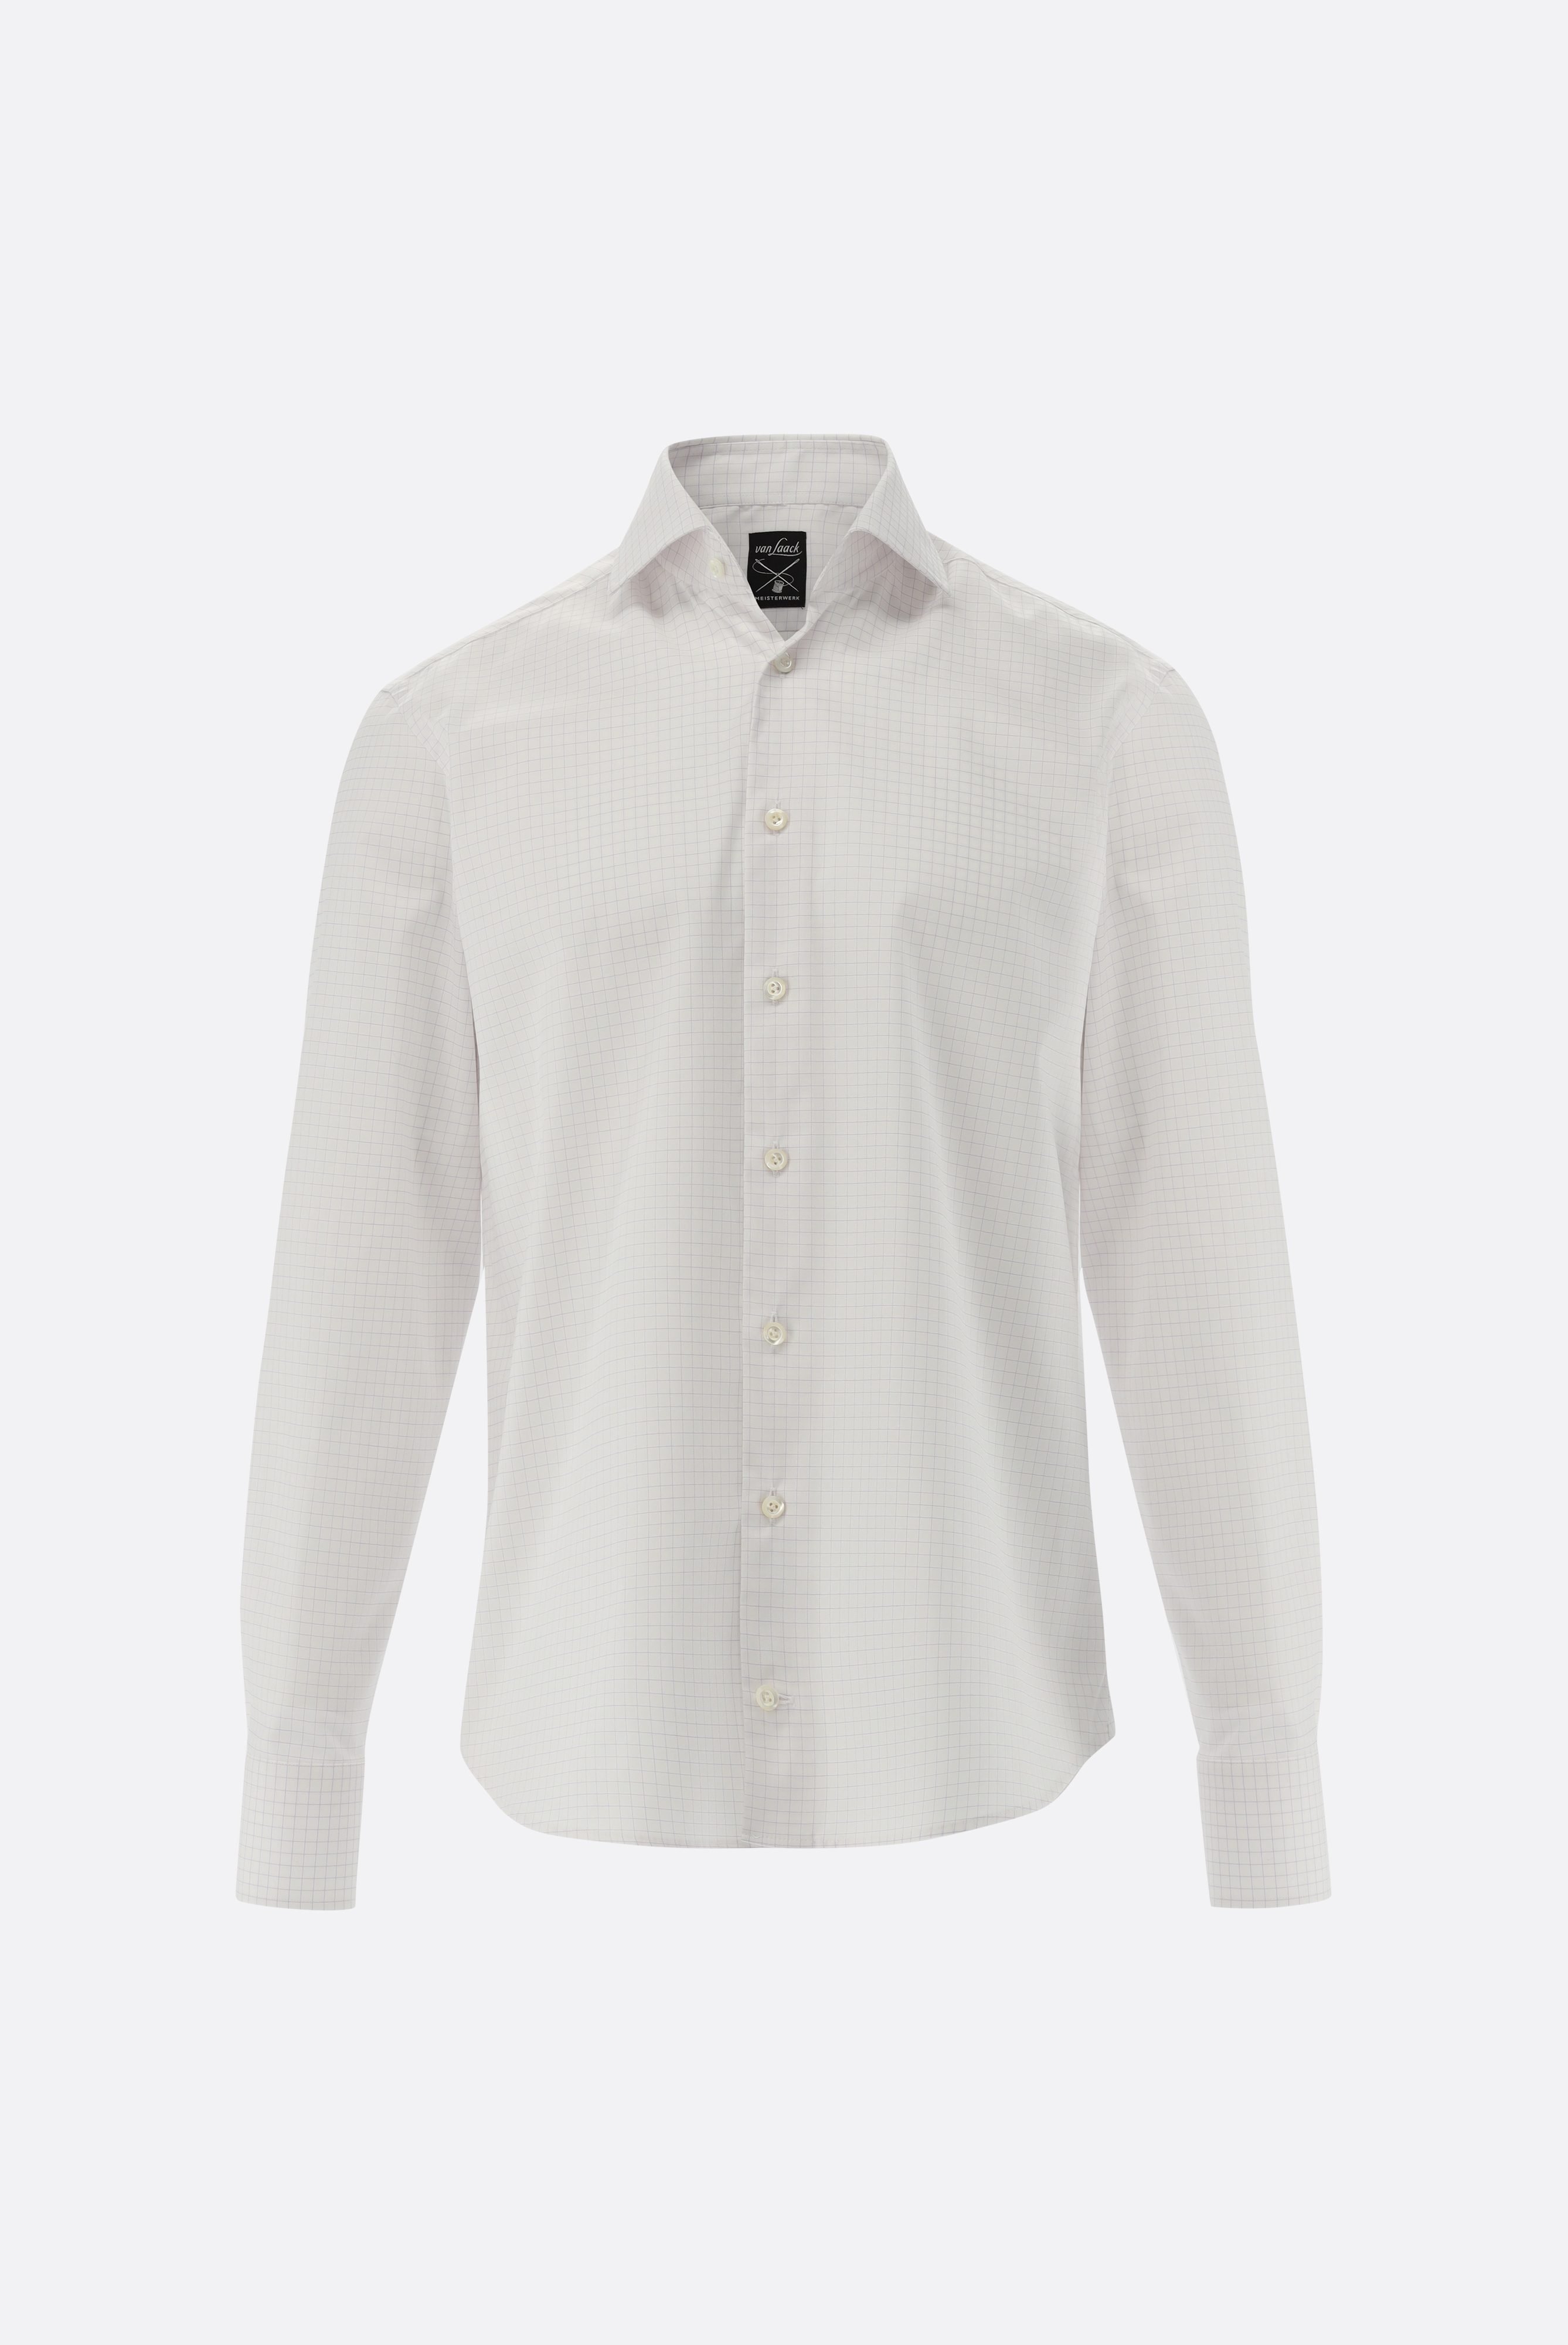 Bügelleichte Hemden+Kariertes Bügelfreies Twill-Hemd Tailor Fit+20.2020.BQ.161105.006.43